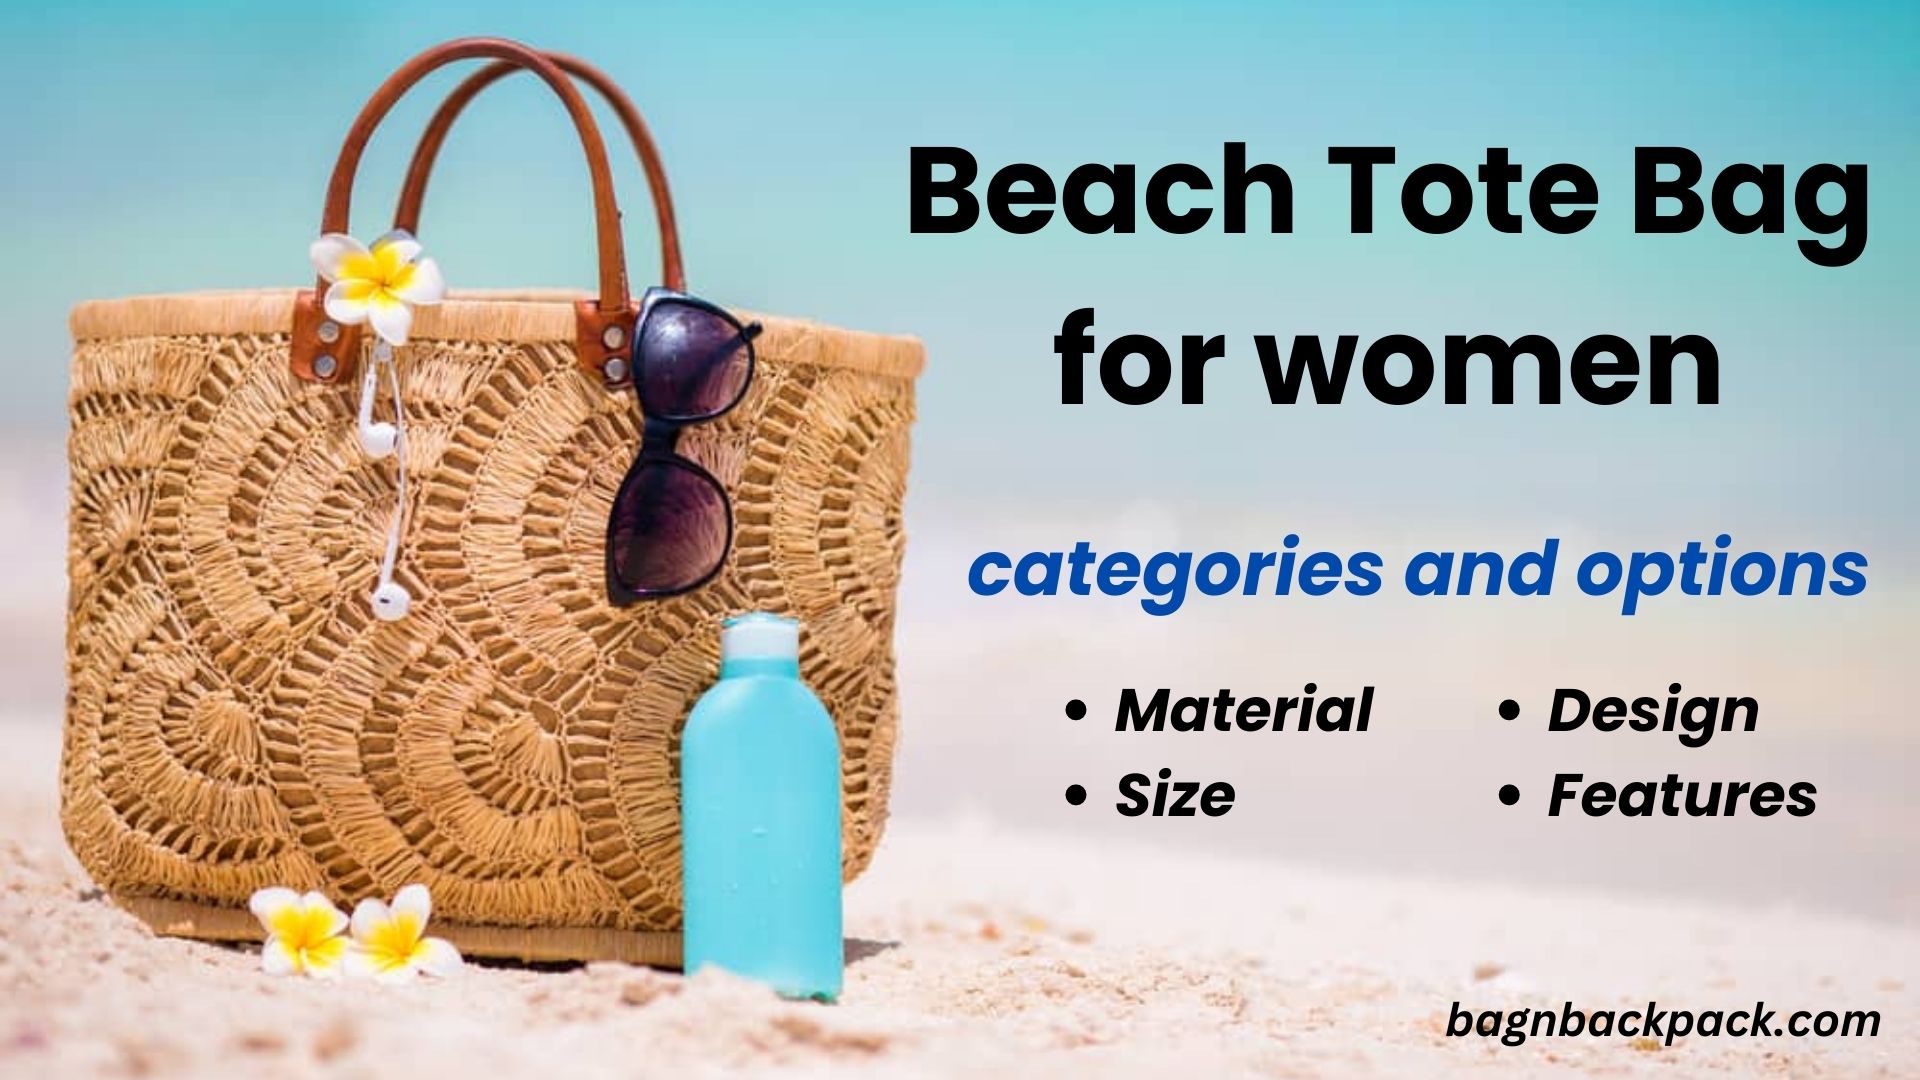 Beach toe bag for women